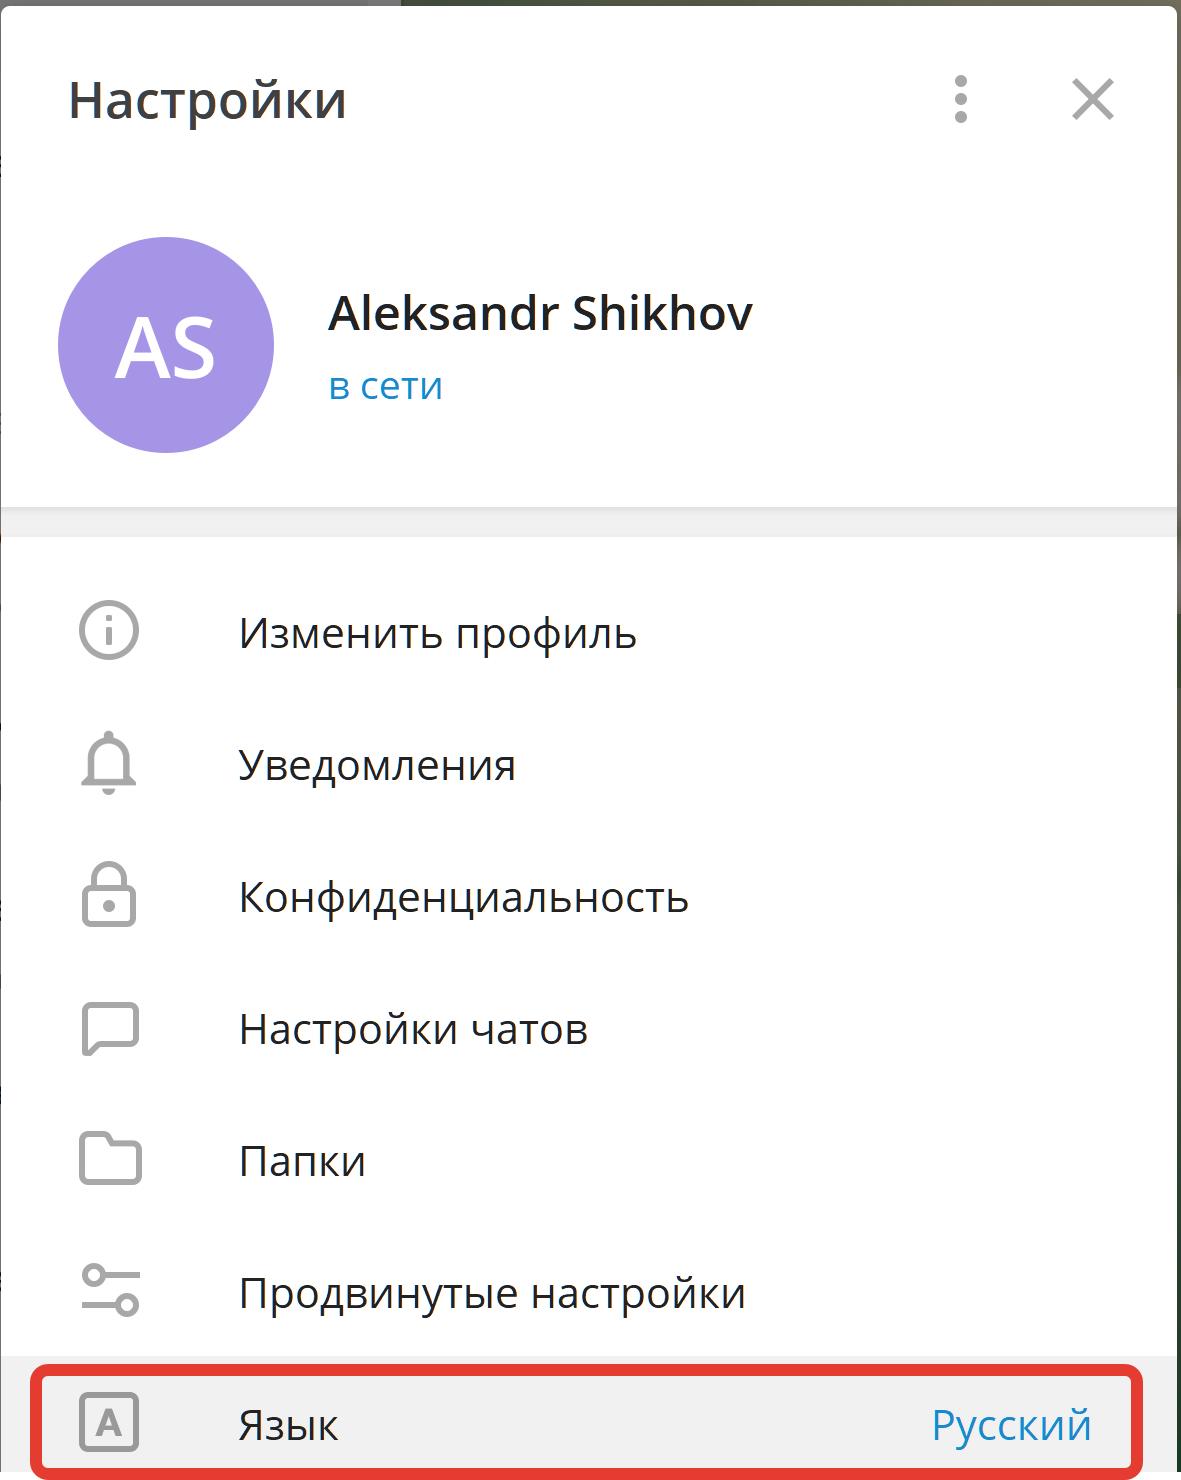 Русский язык в телеграмме в браузере фото 18